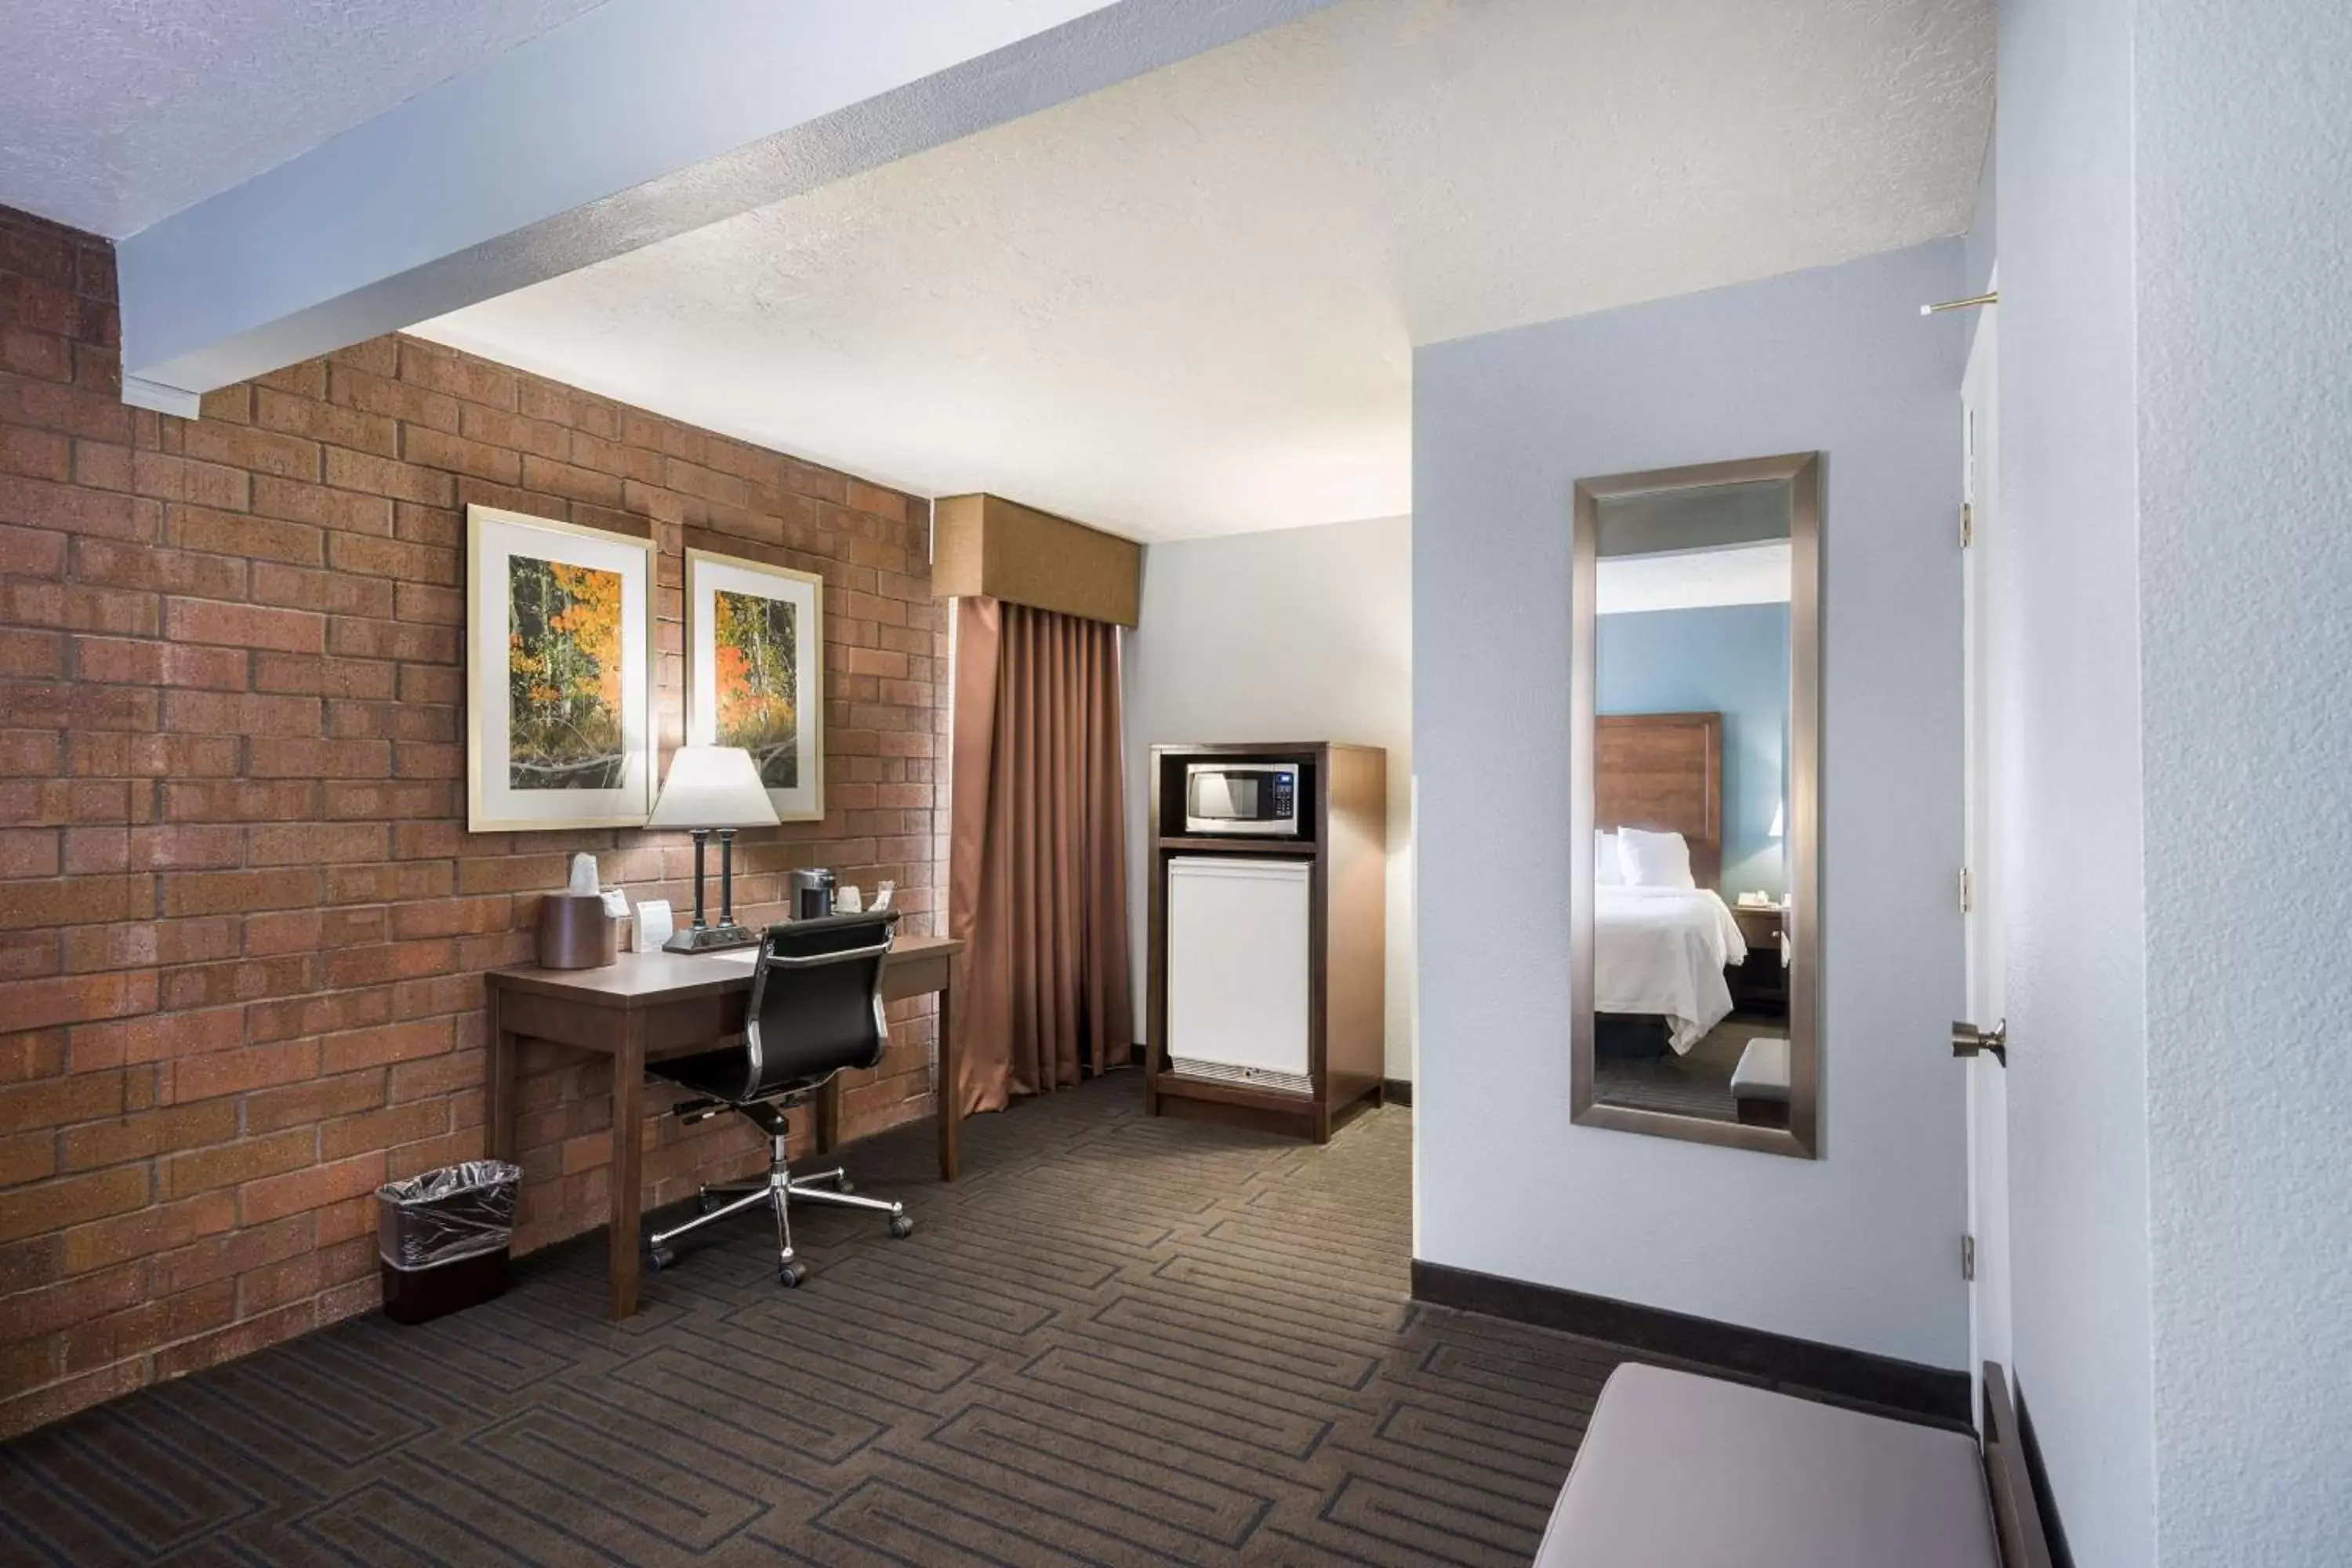 Bedroom, TV/Entertainment Center in Best Western Pocatello Inn